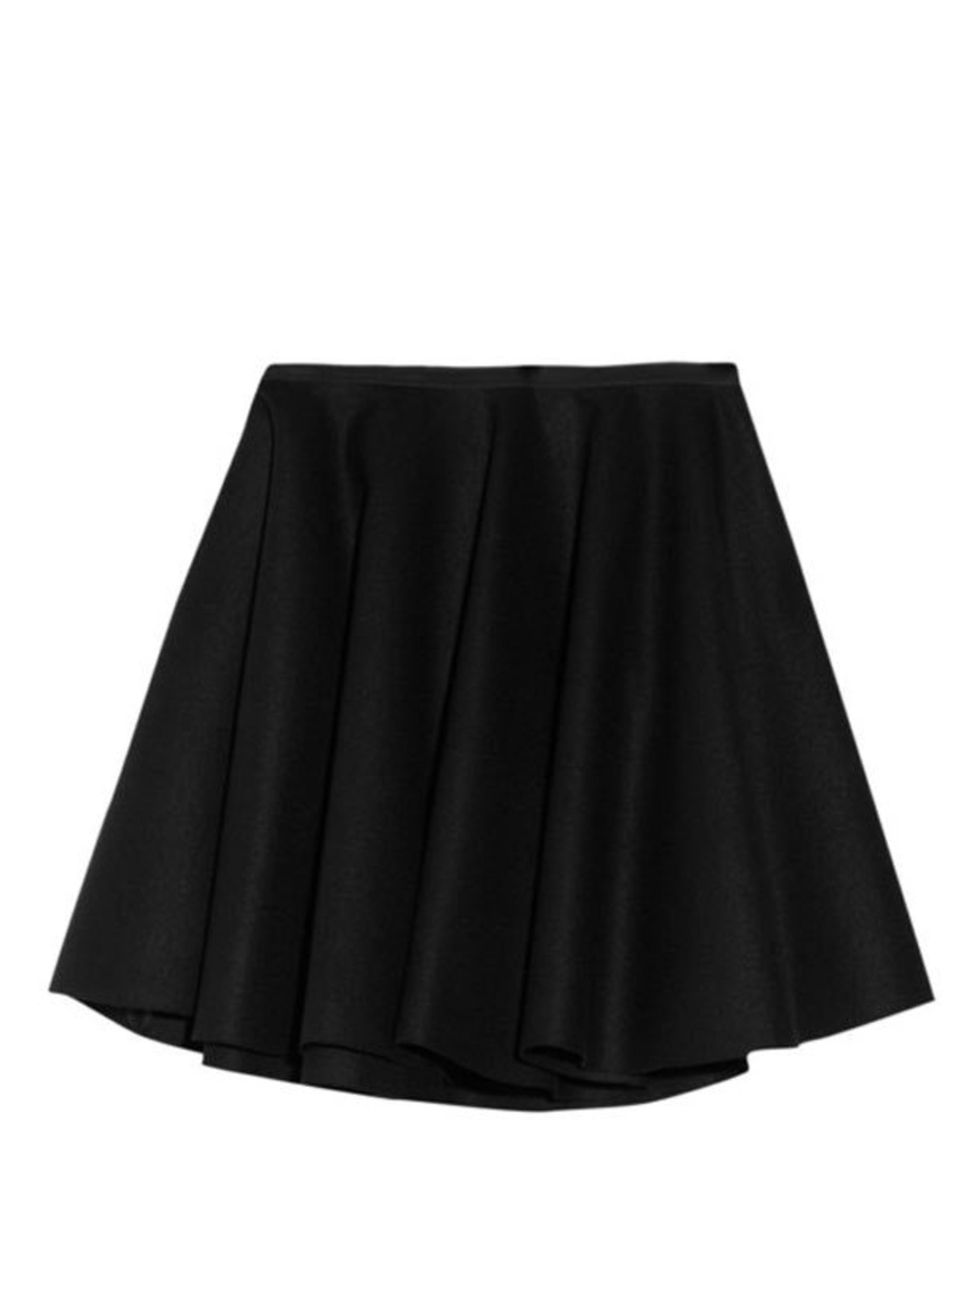 <p>Alexander McQueen mini skirt, £465, at Net-a-Porter</p>